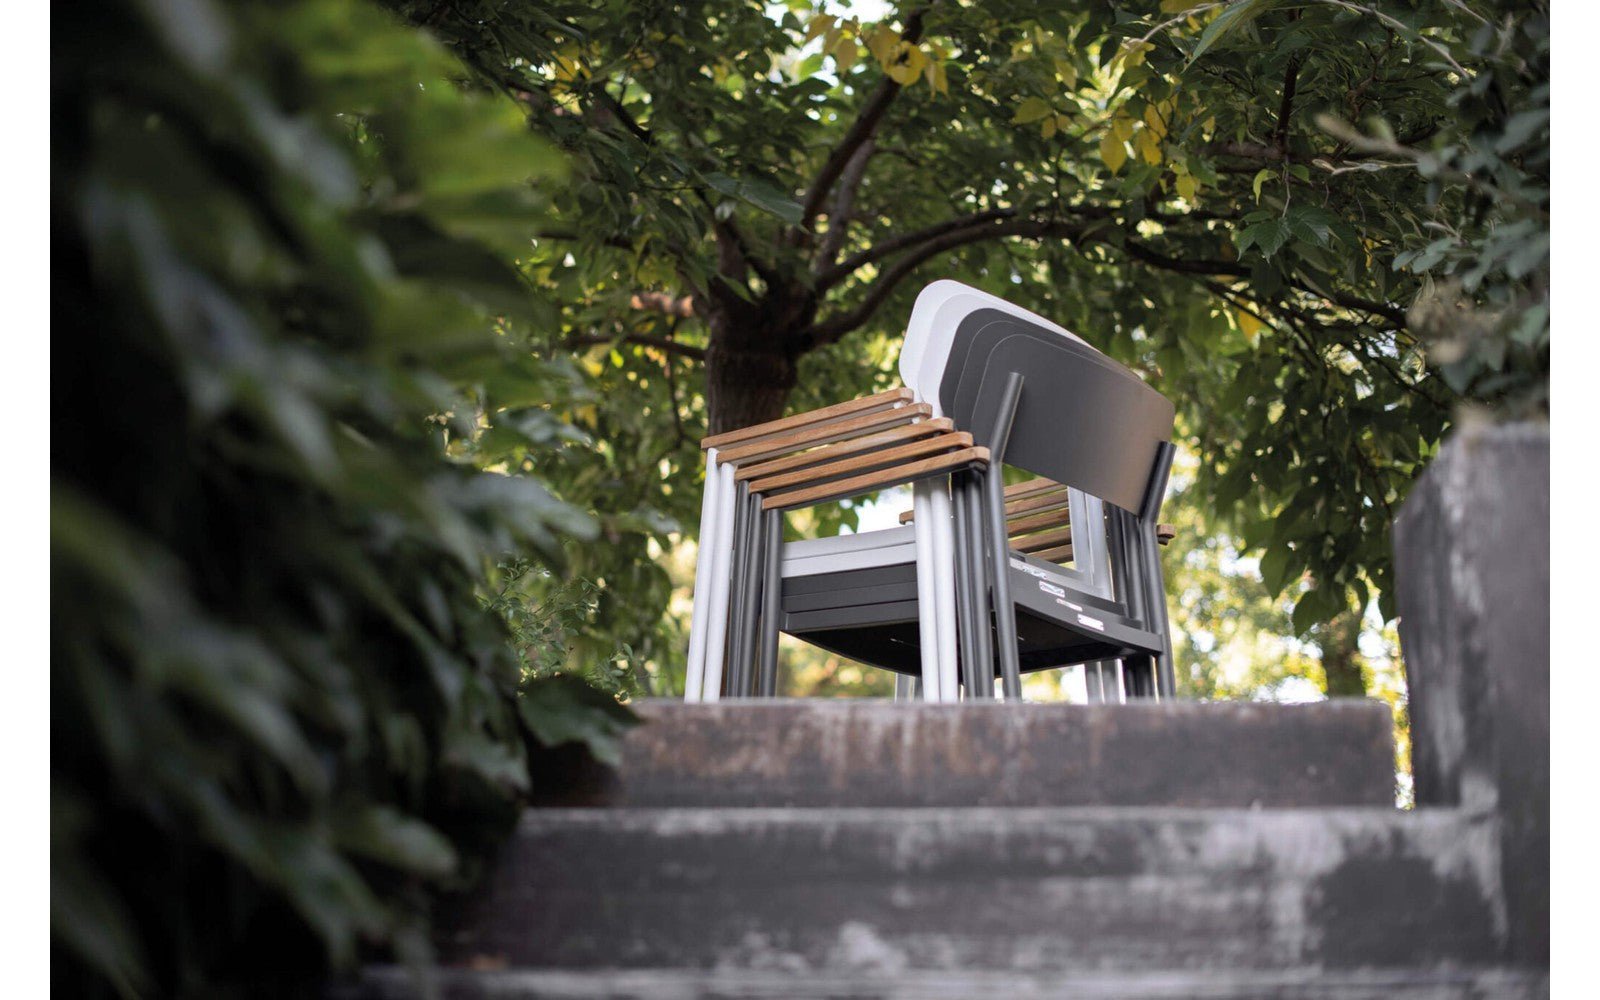 Eden Outdoor Chair